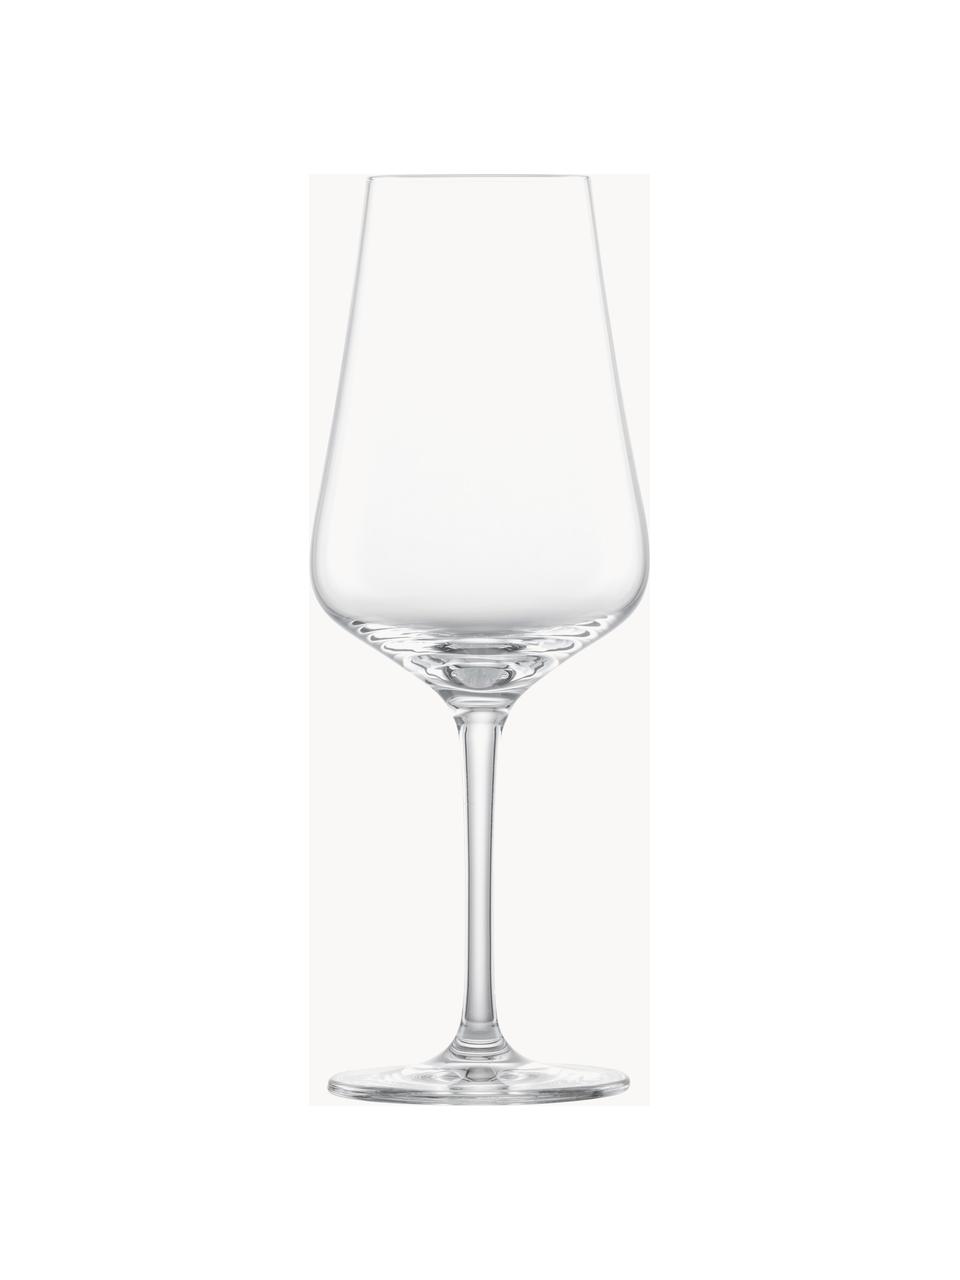 Kieliszek do białego wina Fine, 6 szt., Tritan, Transparentny, Ø 8 x W 22 cm, 370 ml